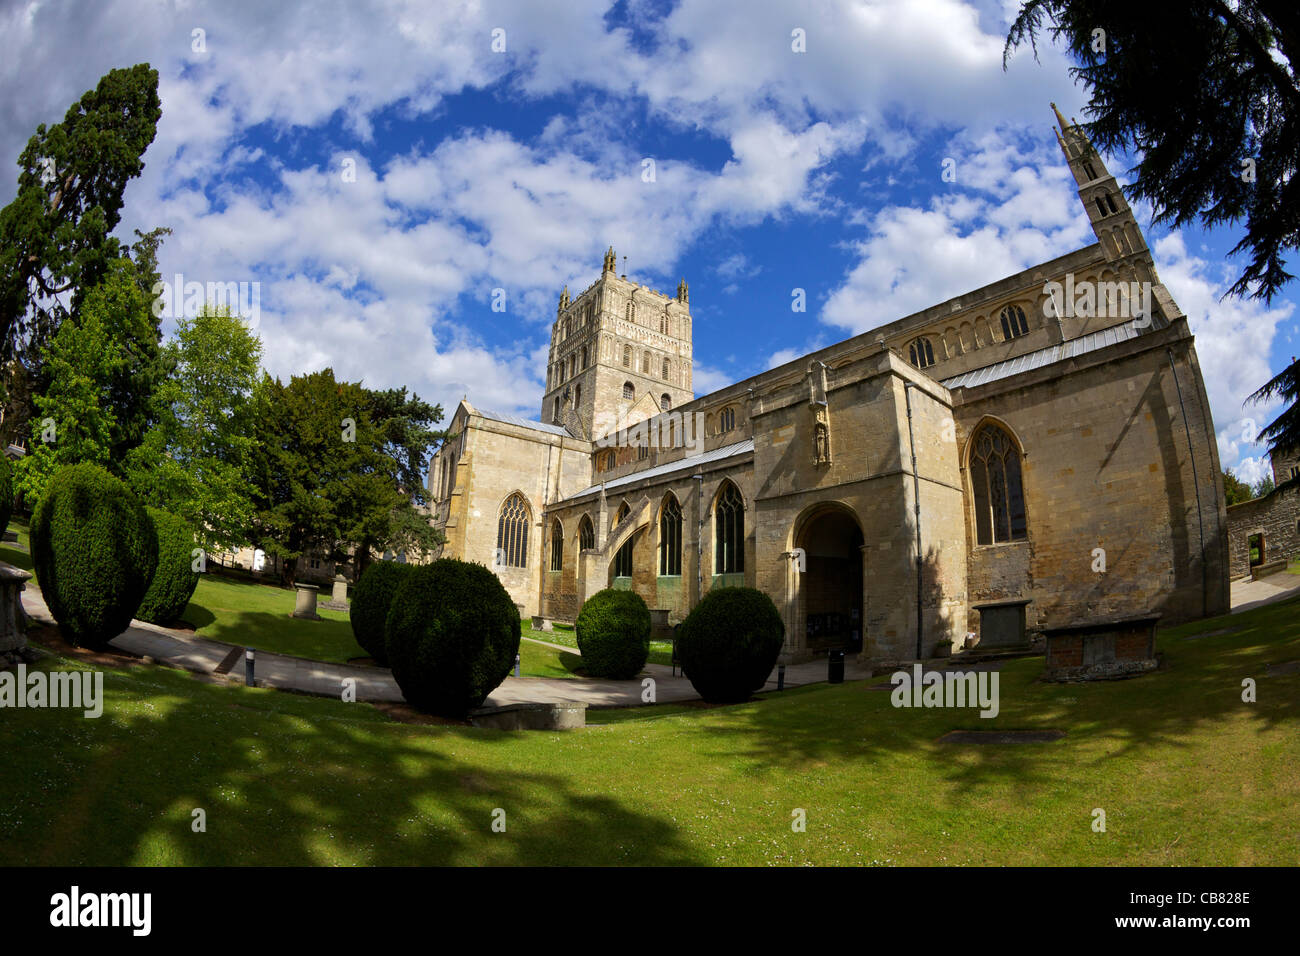 Abtei der Heiligen Jungfrau Maria, äußere Tewkesbury, Gloucestershire, England, Großbritannien, Vereinigtes Königreich, GB, Großbritannien, Stockfoto